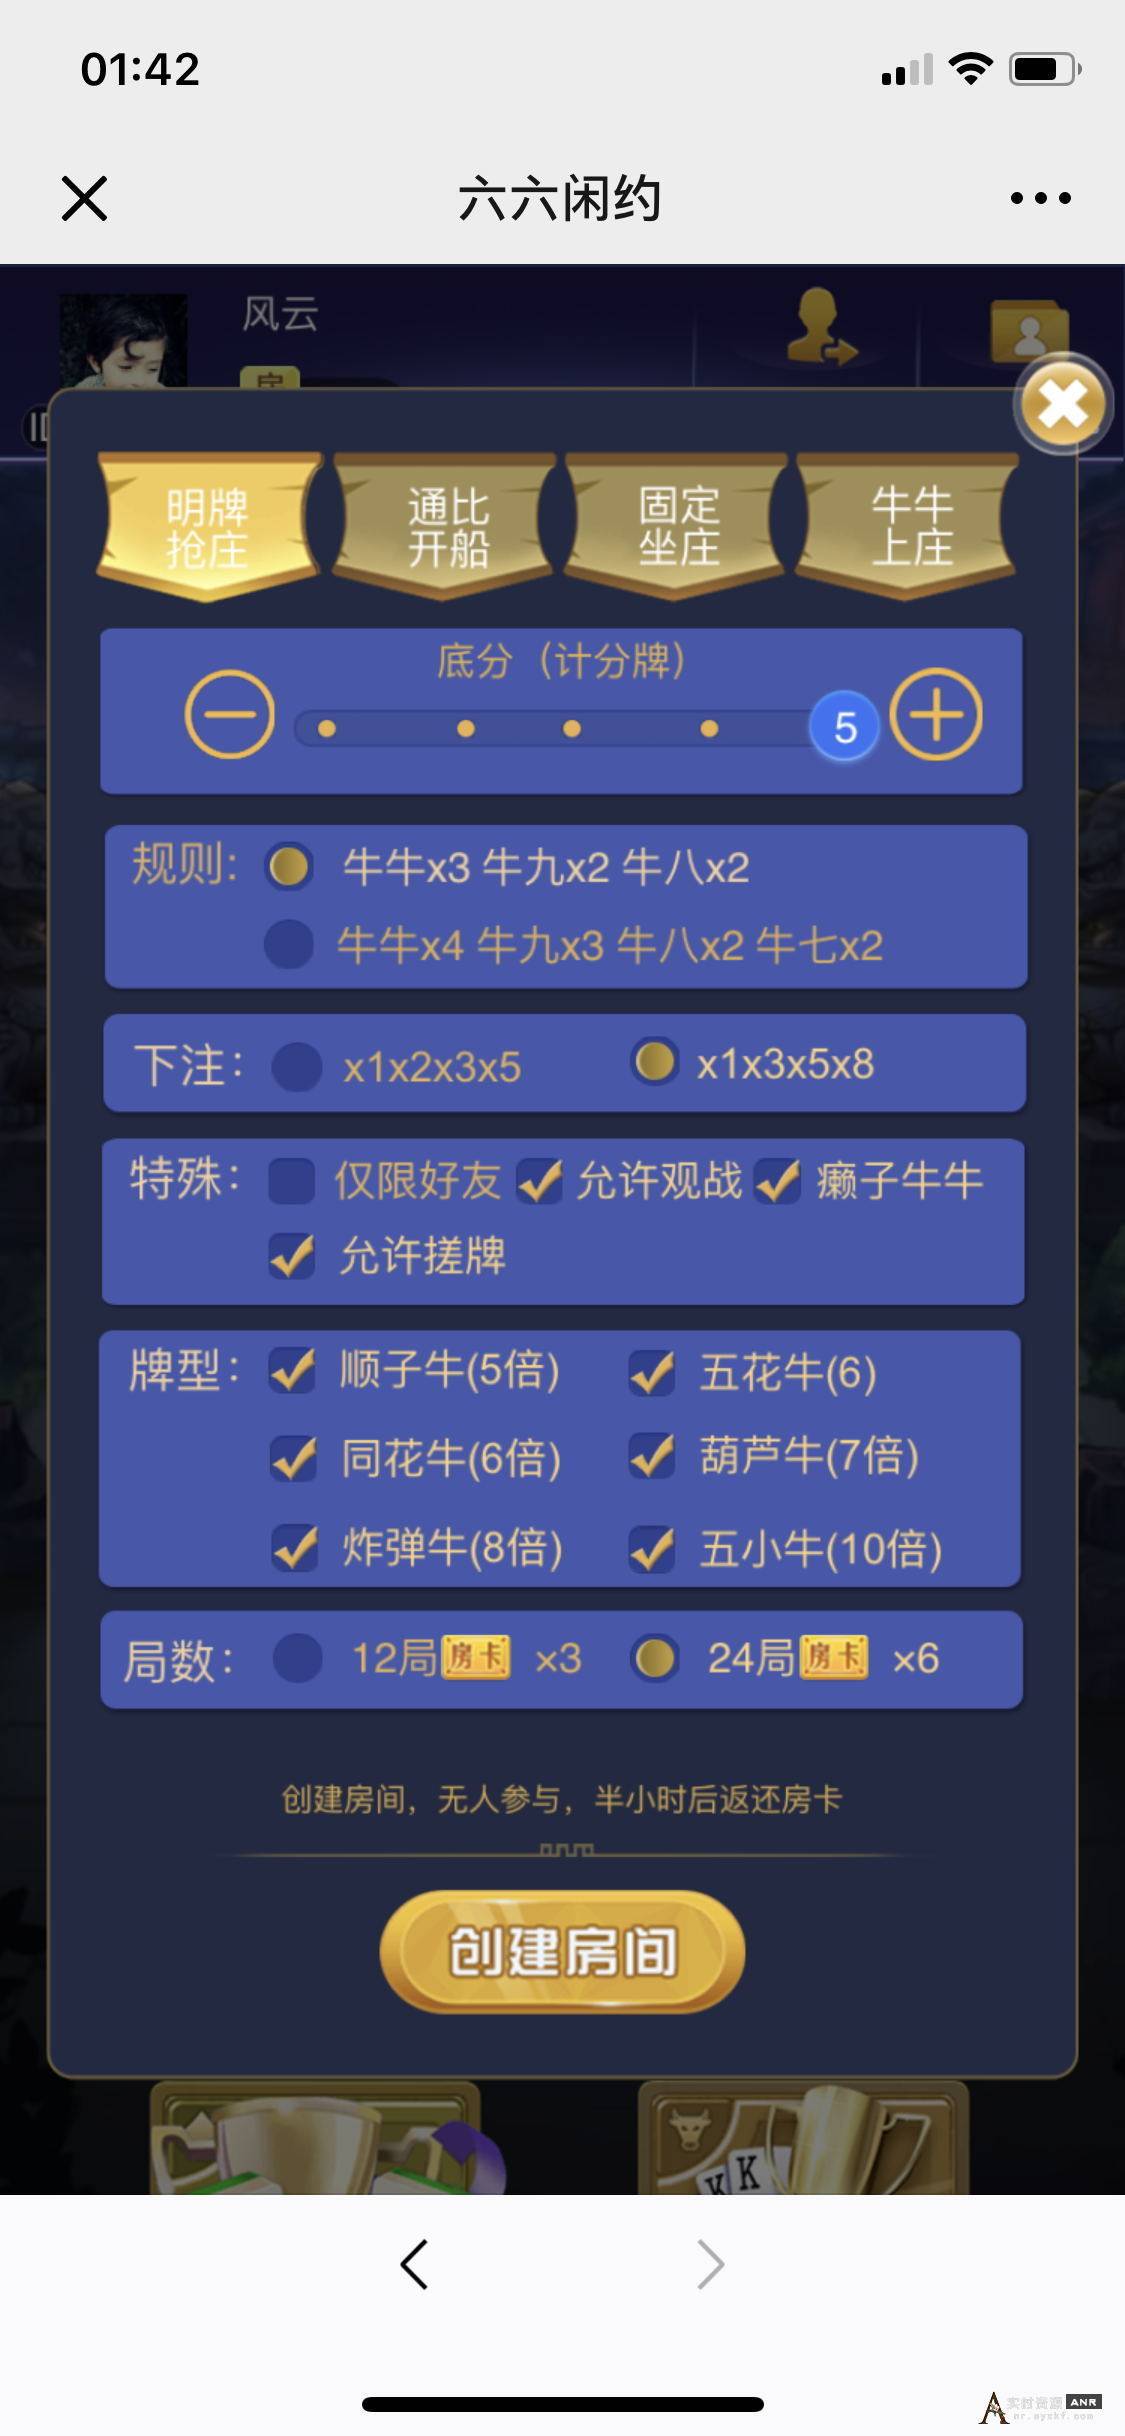 最新H5顺子牛大圣完整版棋牌源码 网络资源 图6张